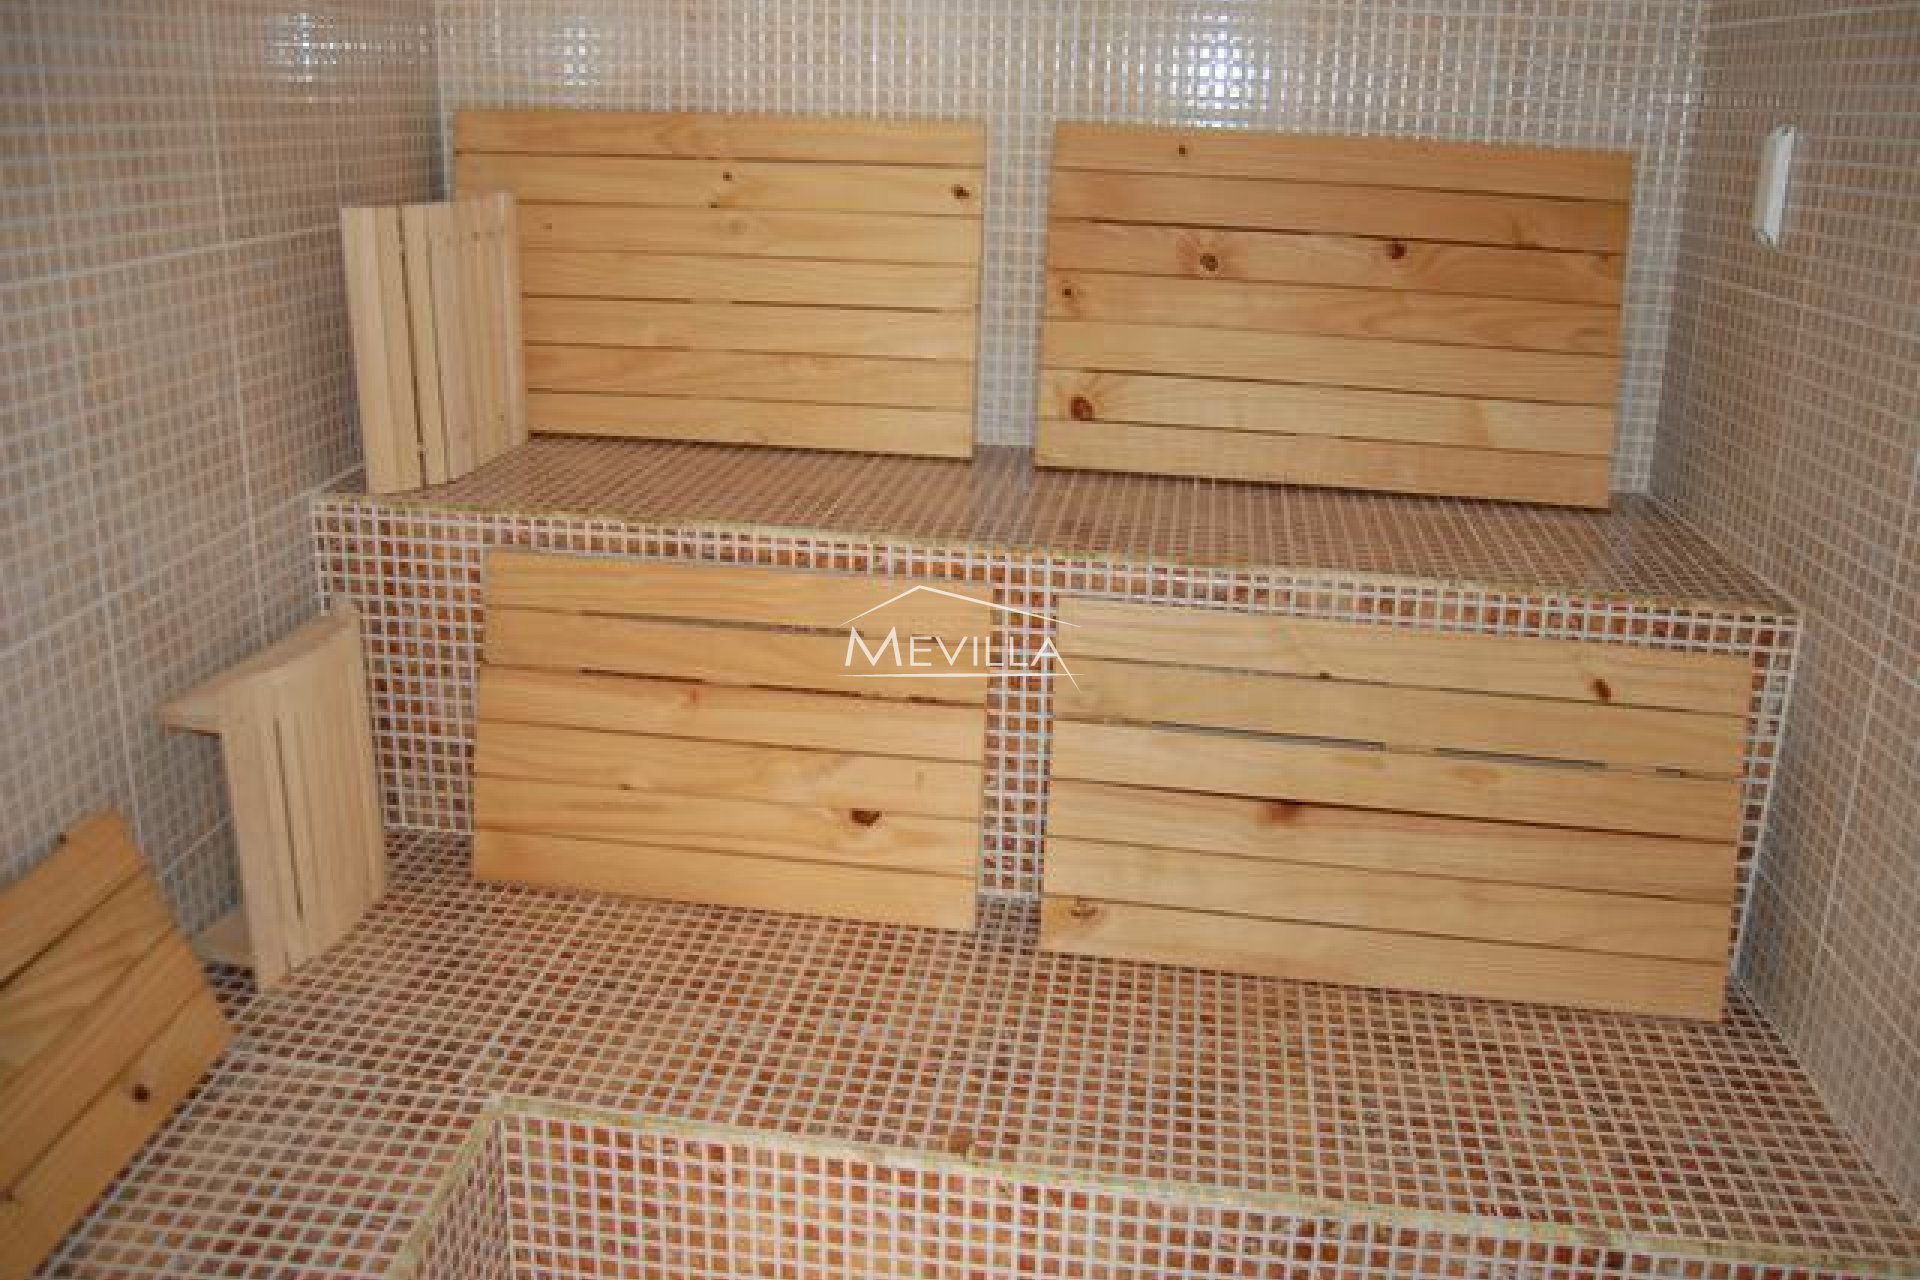 The sauna 